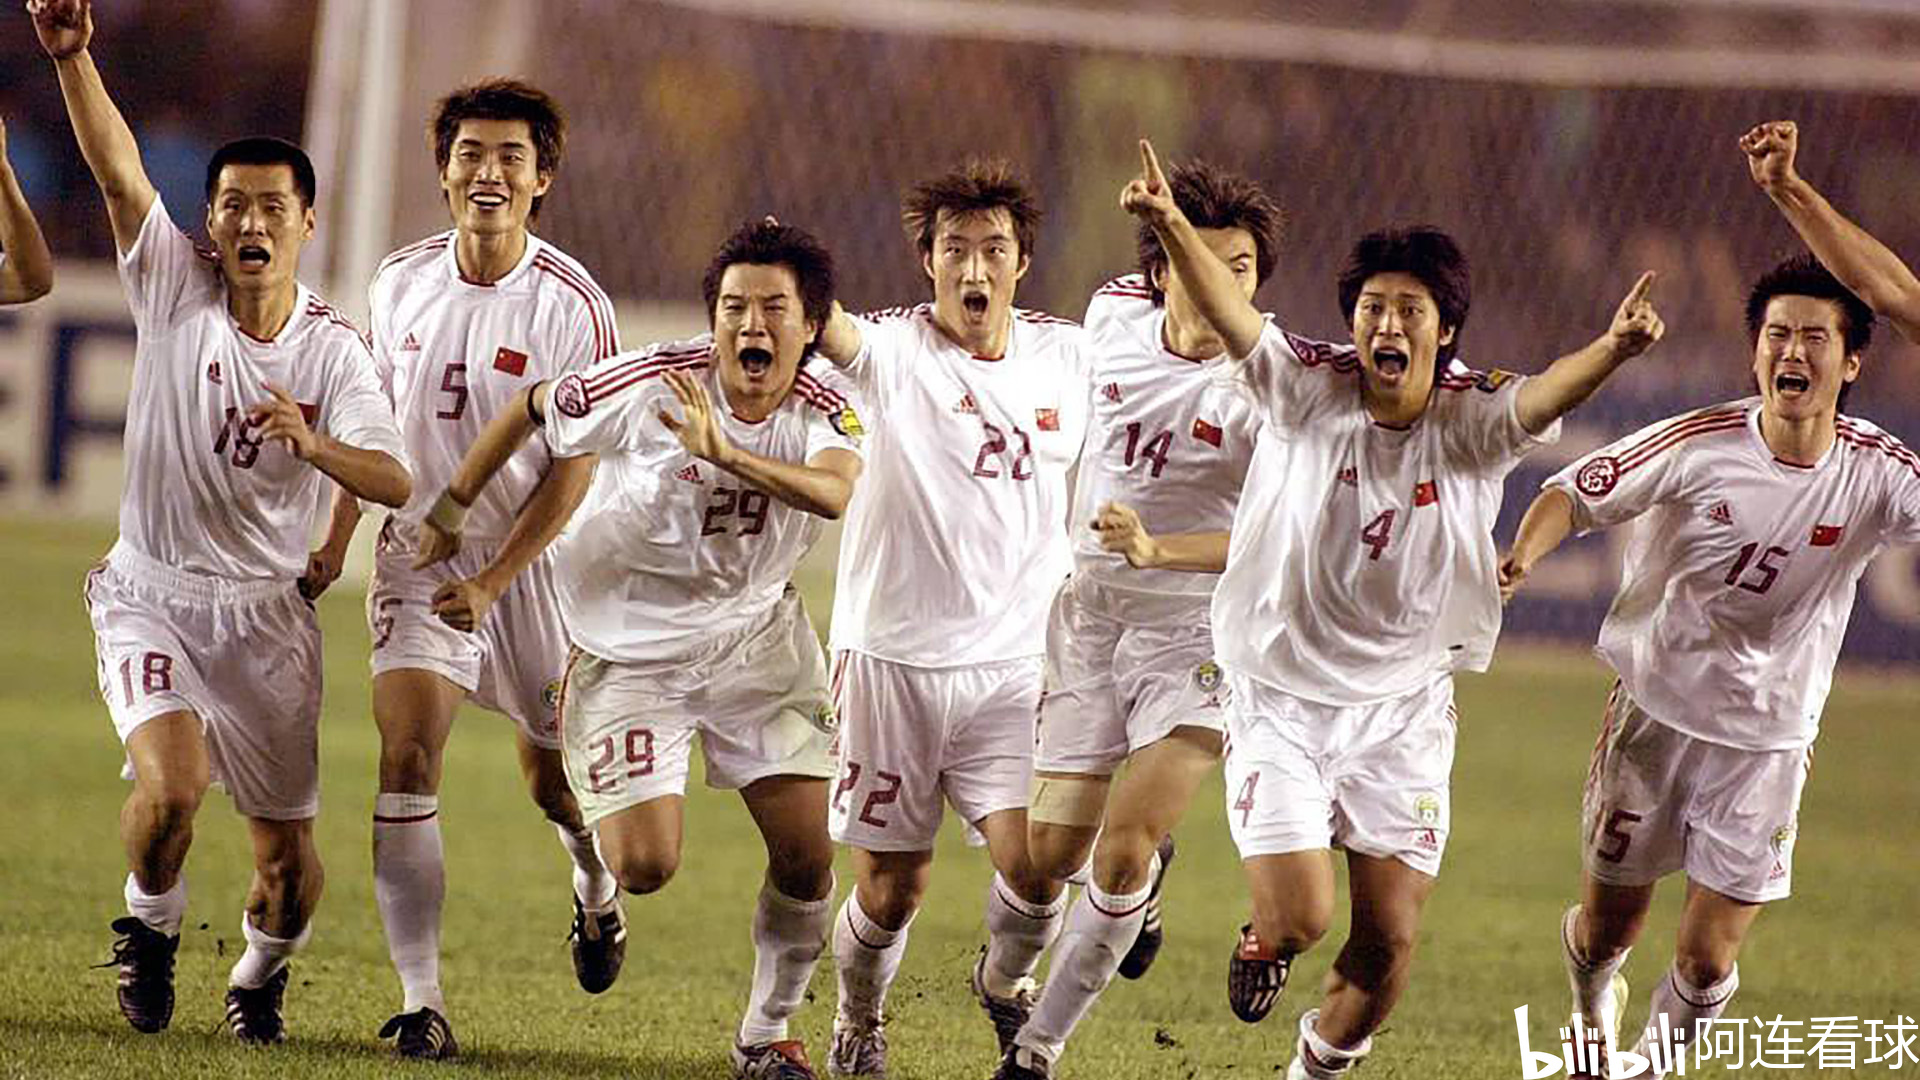 2013年亚洲梦想杯上海_2004年国足队长是谁_2004年亚洲杯中国队队长